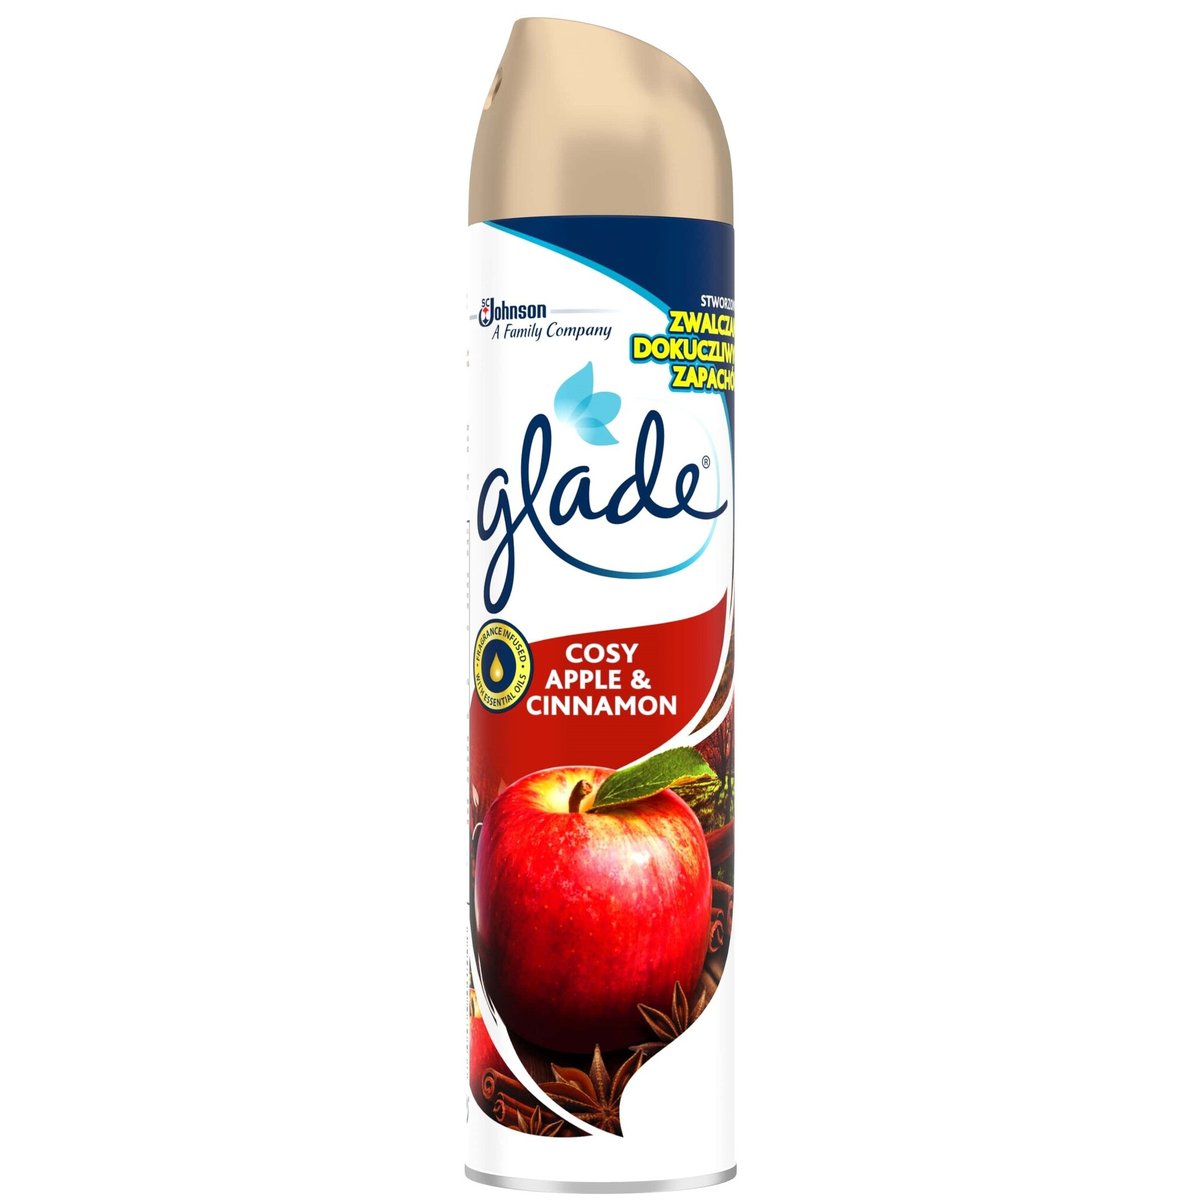 Glade Apple & Cinnamon aerosol